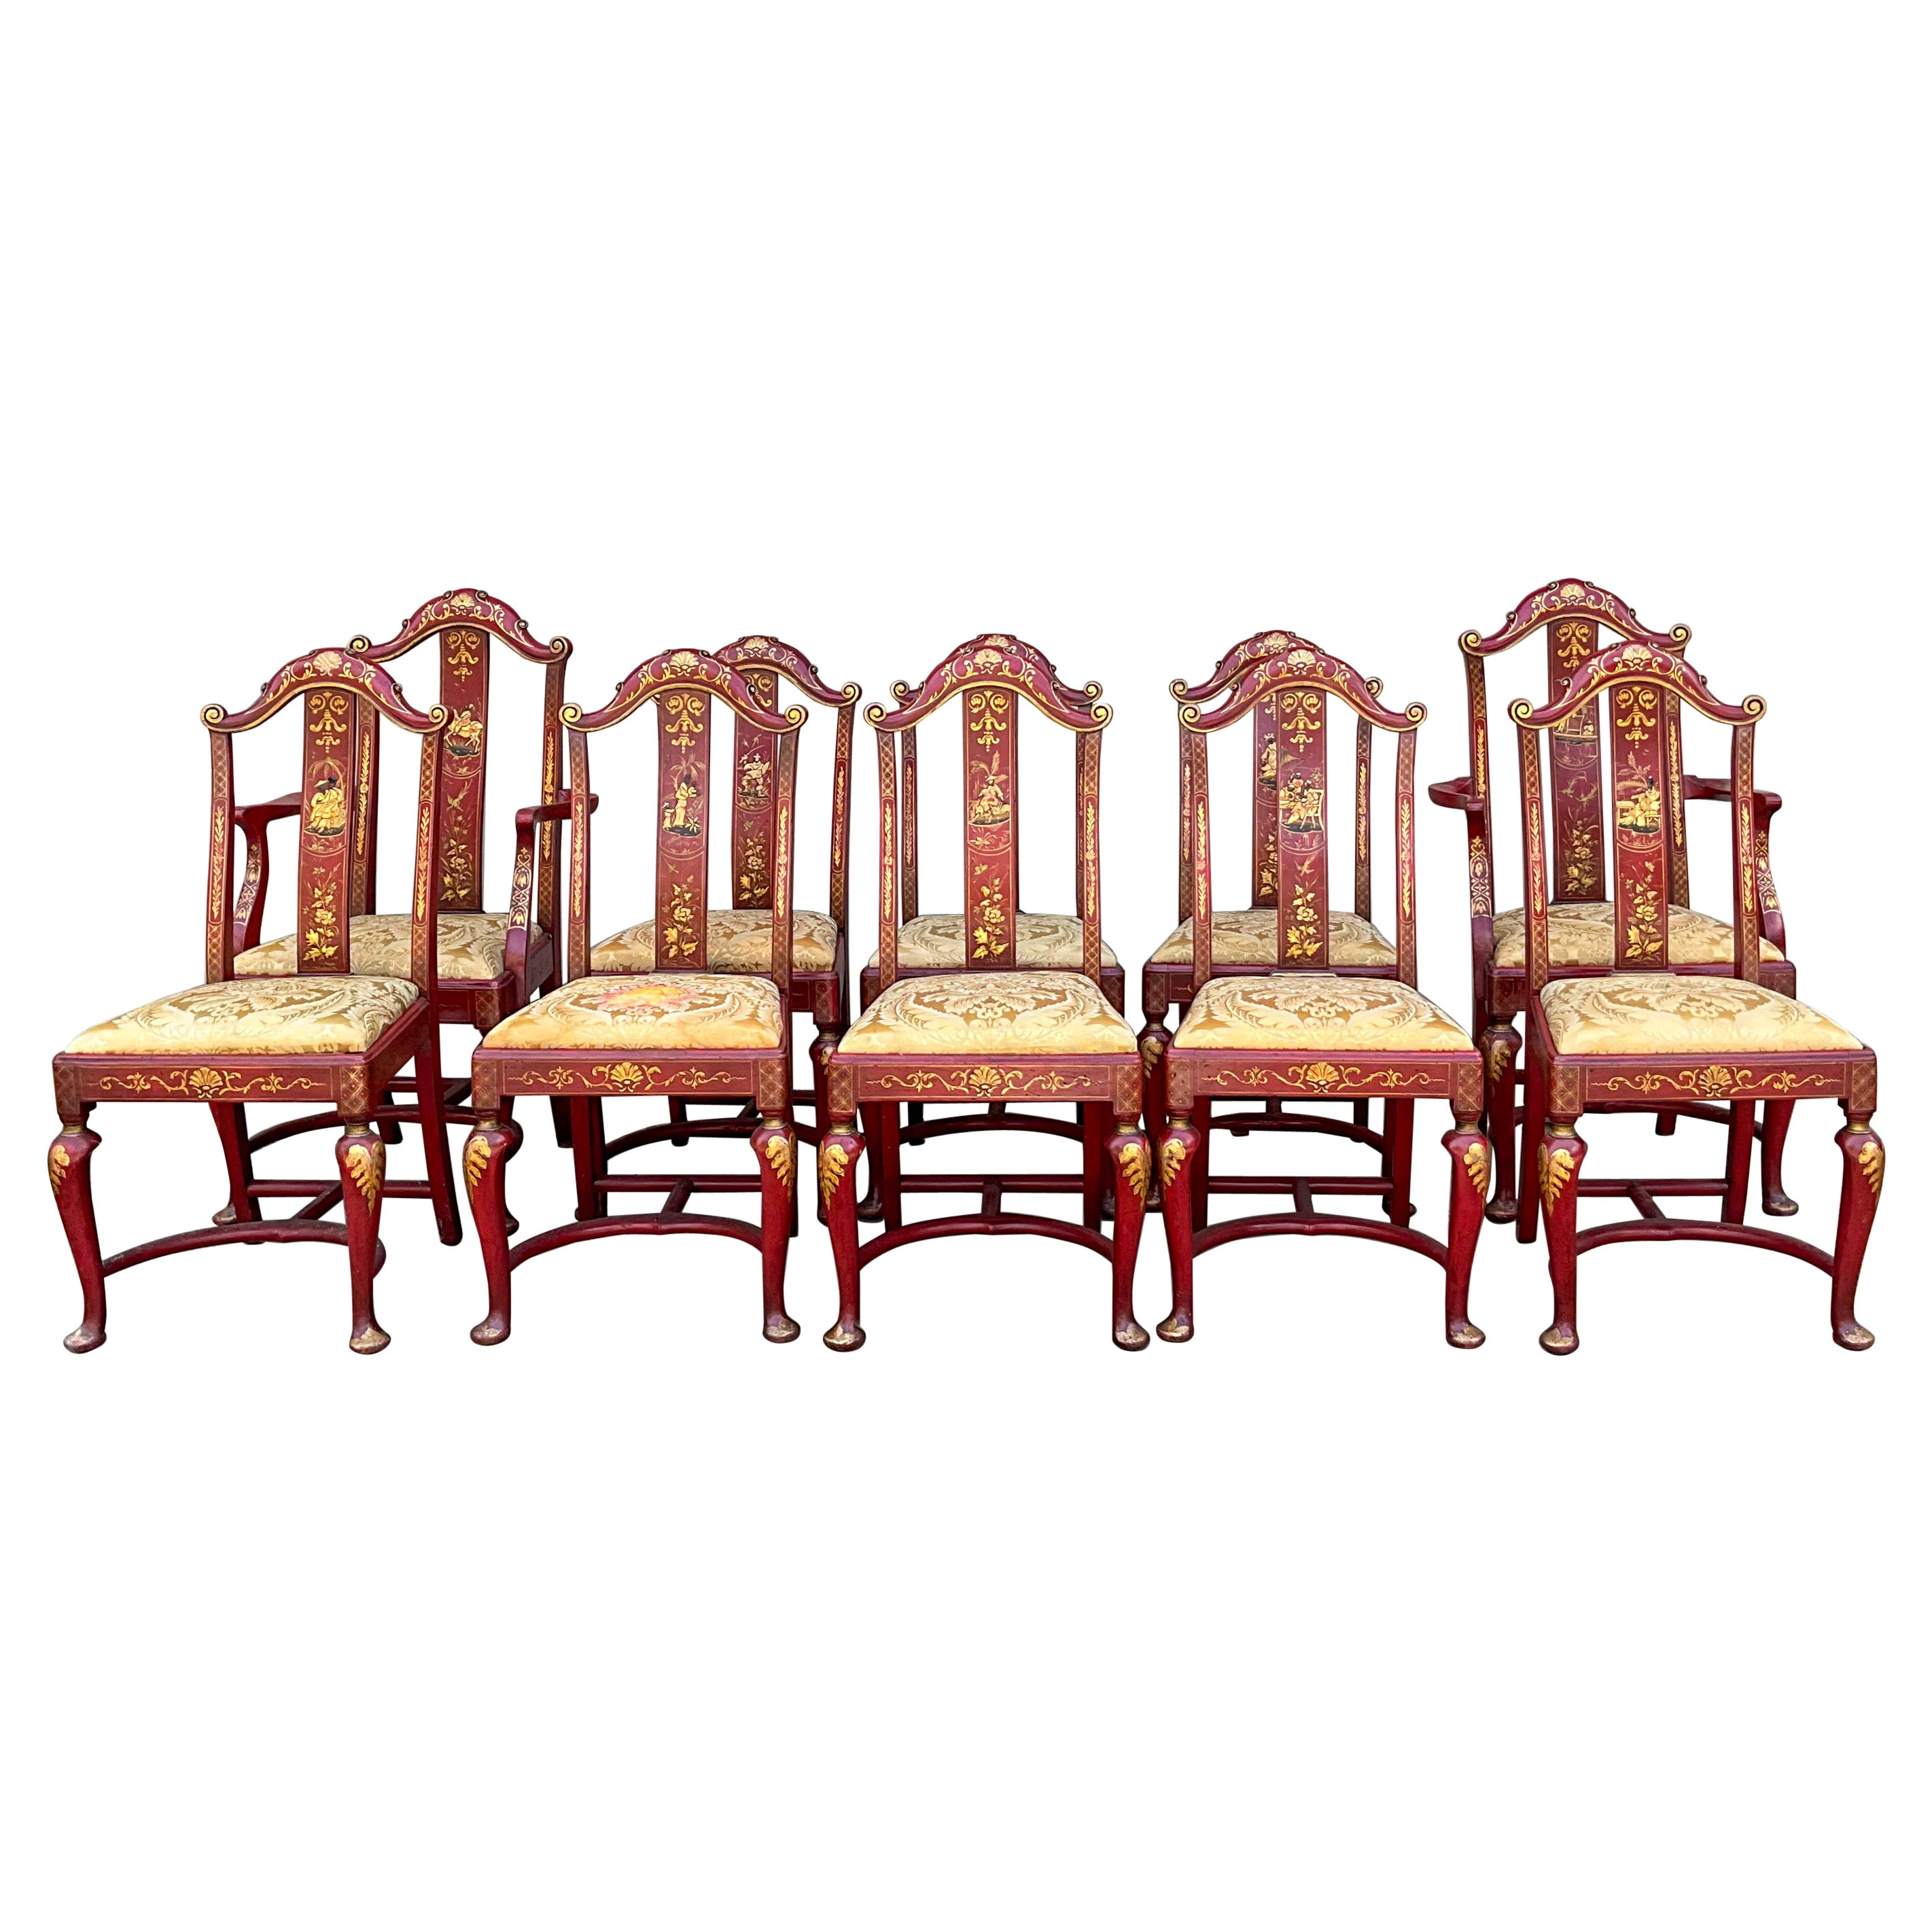 Chaises de salle à manger chinoiseries rouges et dorées de style Queen Anne anglais des débuts -S/10